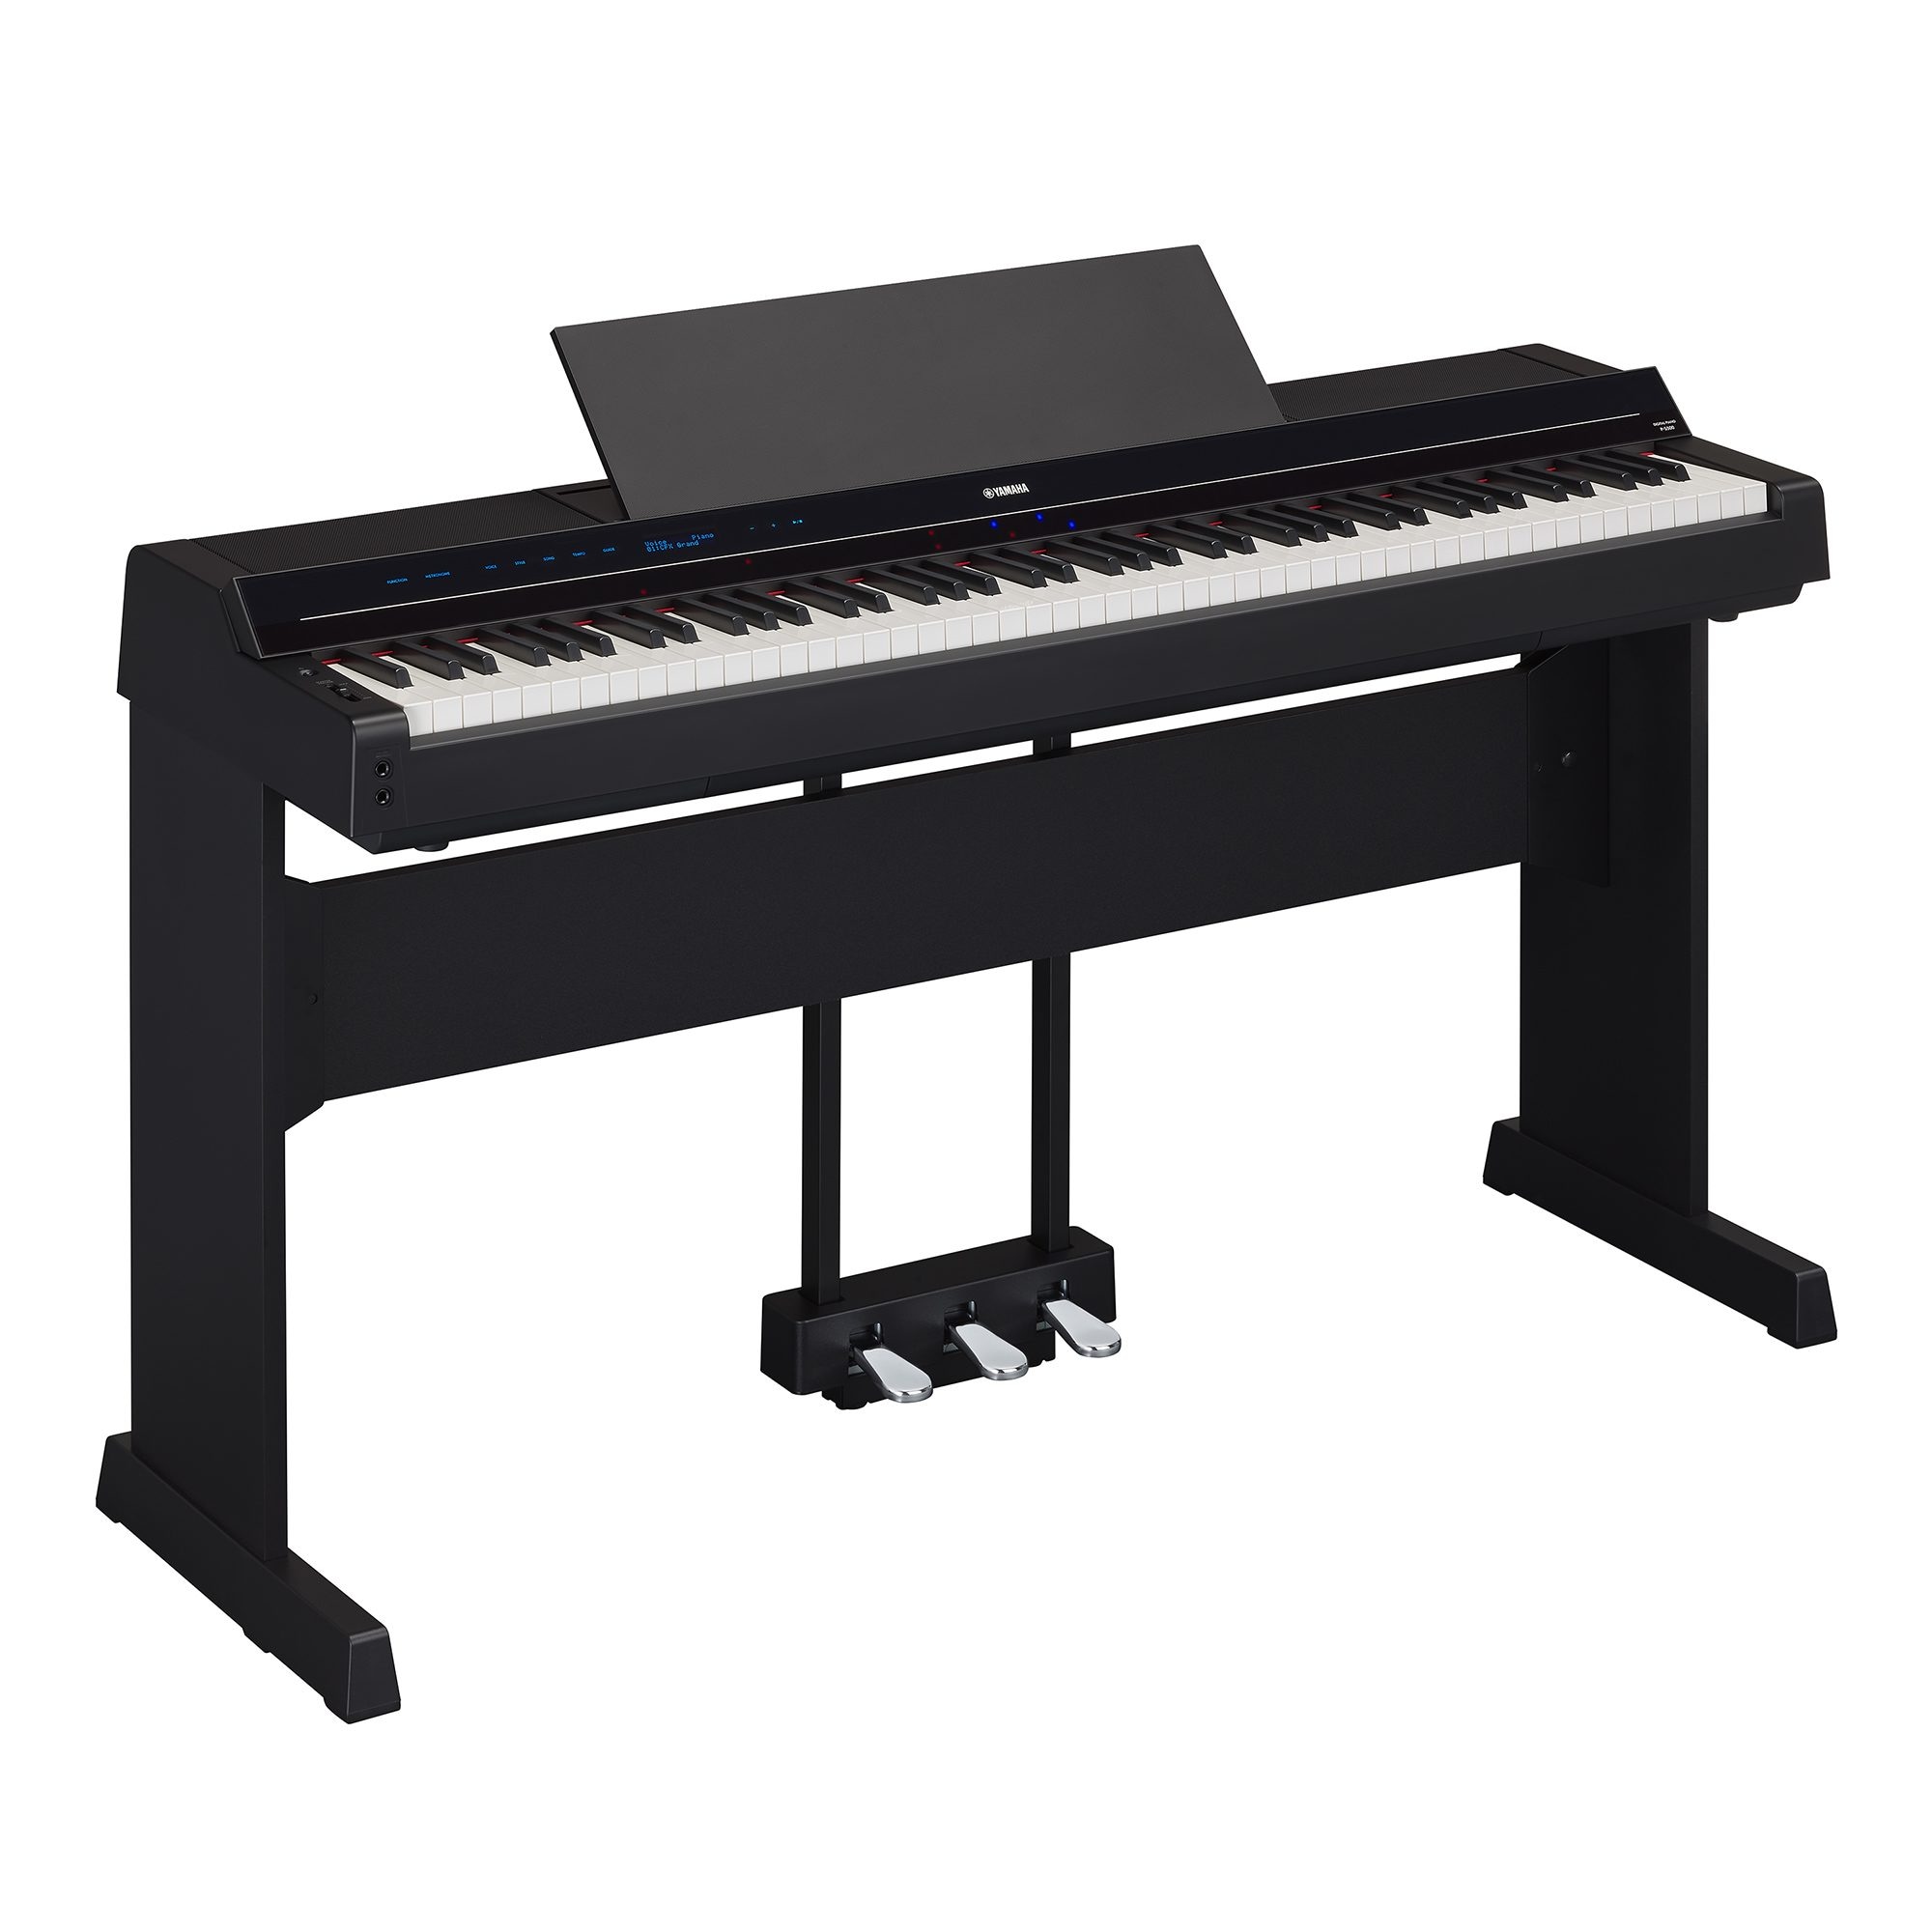 P-S500 Portable Digital Smart Piano Yamaha USA